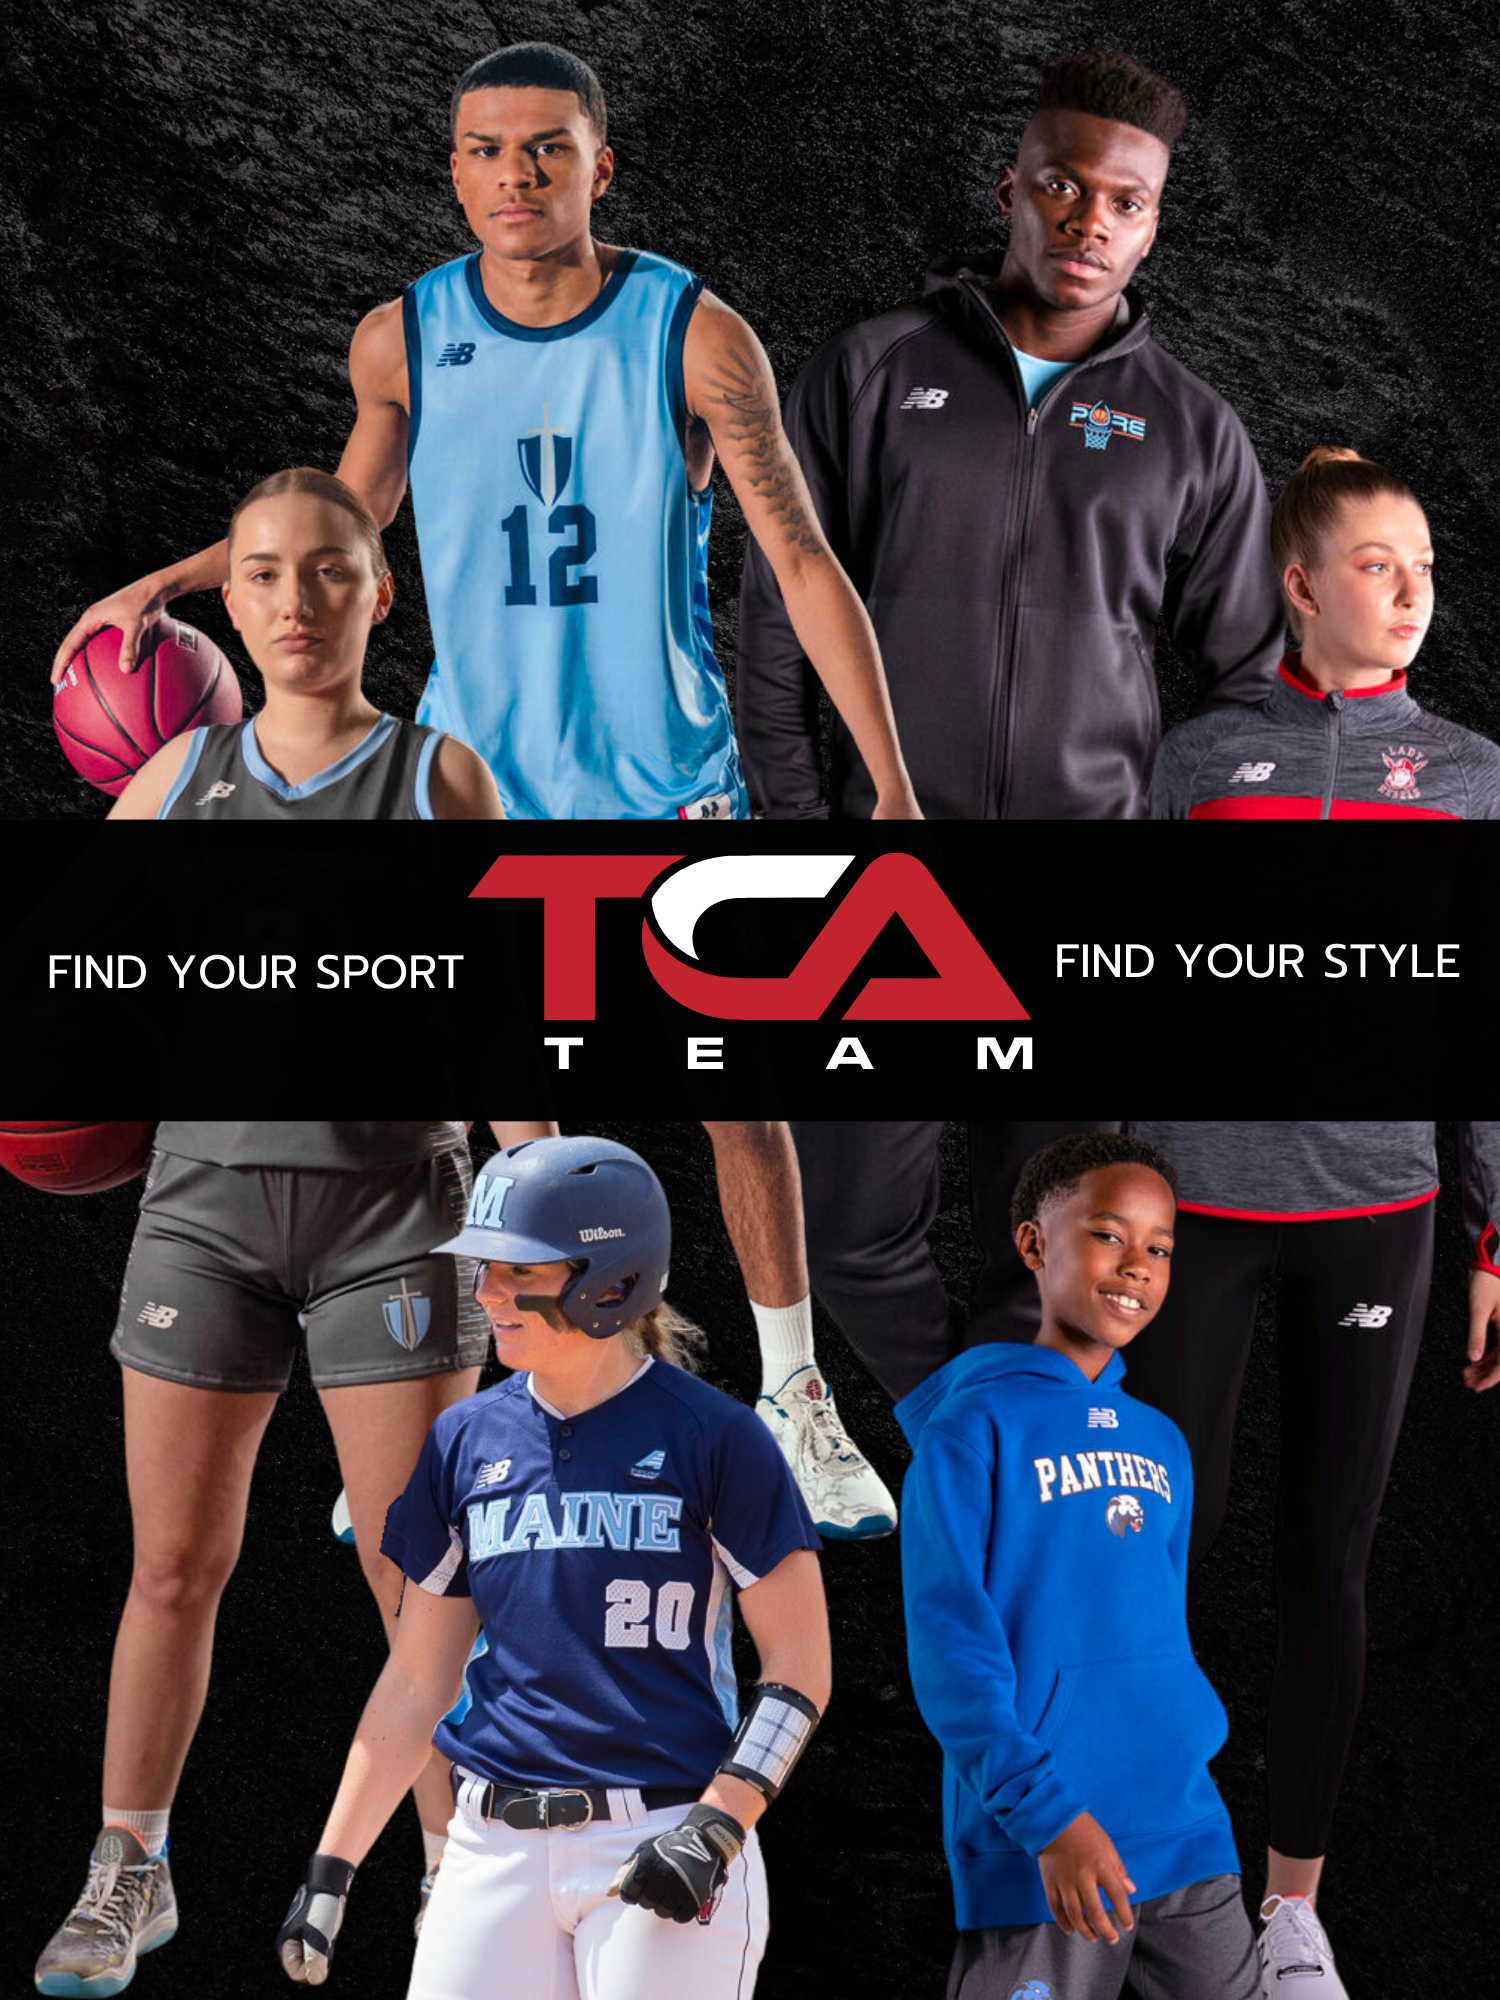 TCA Team - Your go-to destination for premium sports uniforms, team apparel, and equipment